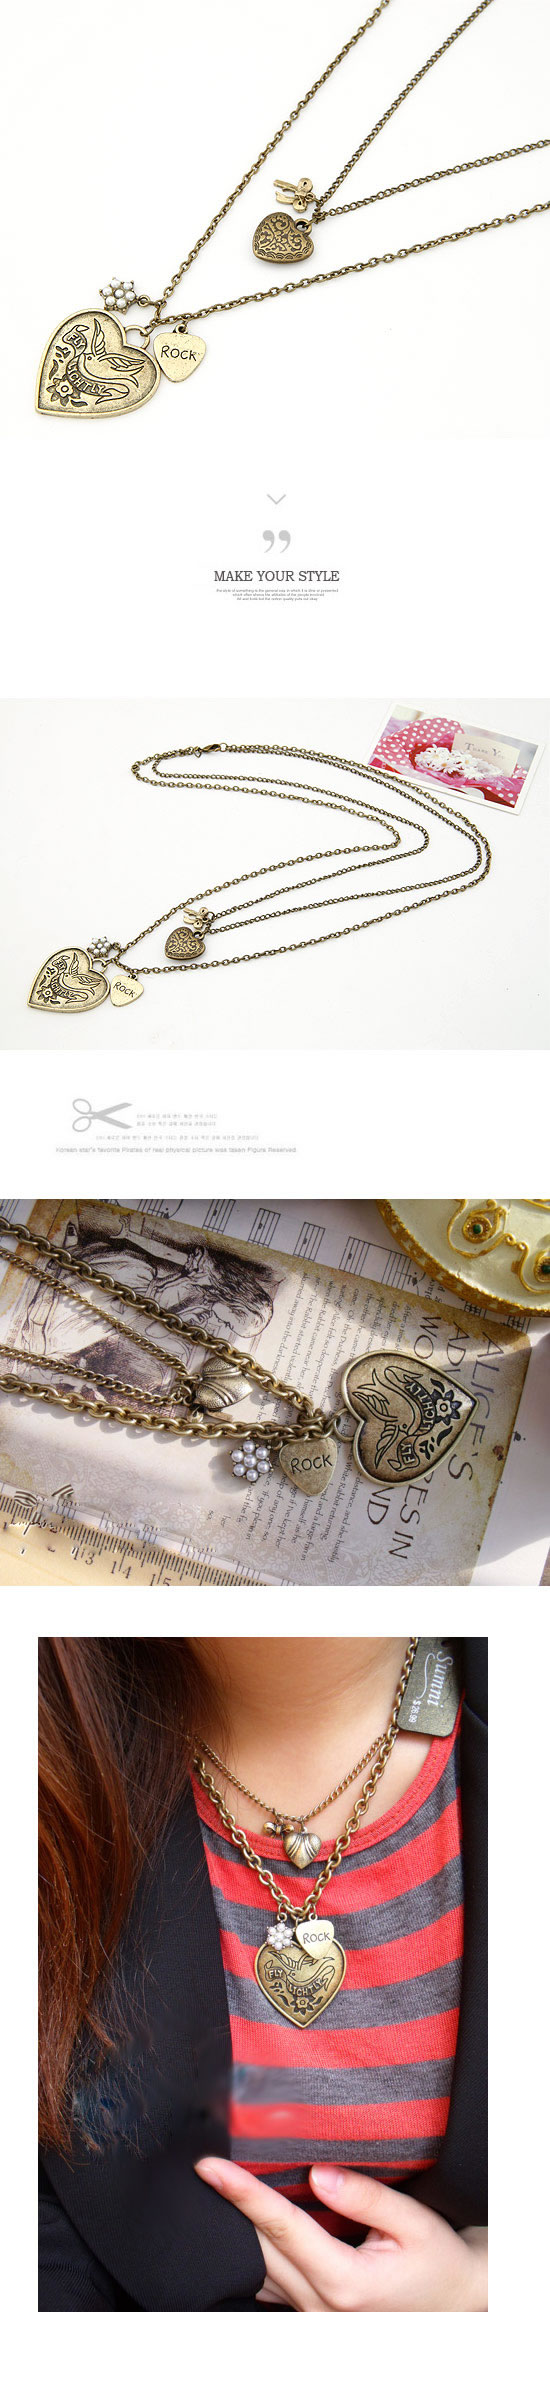 Bendable Bronze Double Heart Pendant,Chains